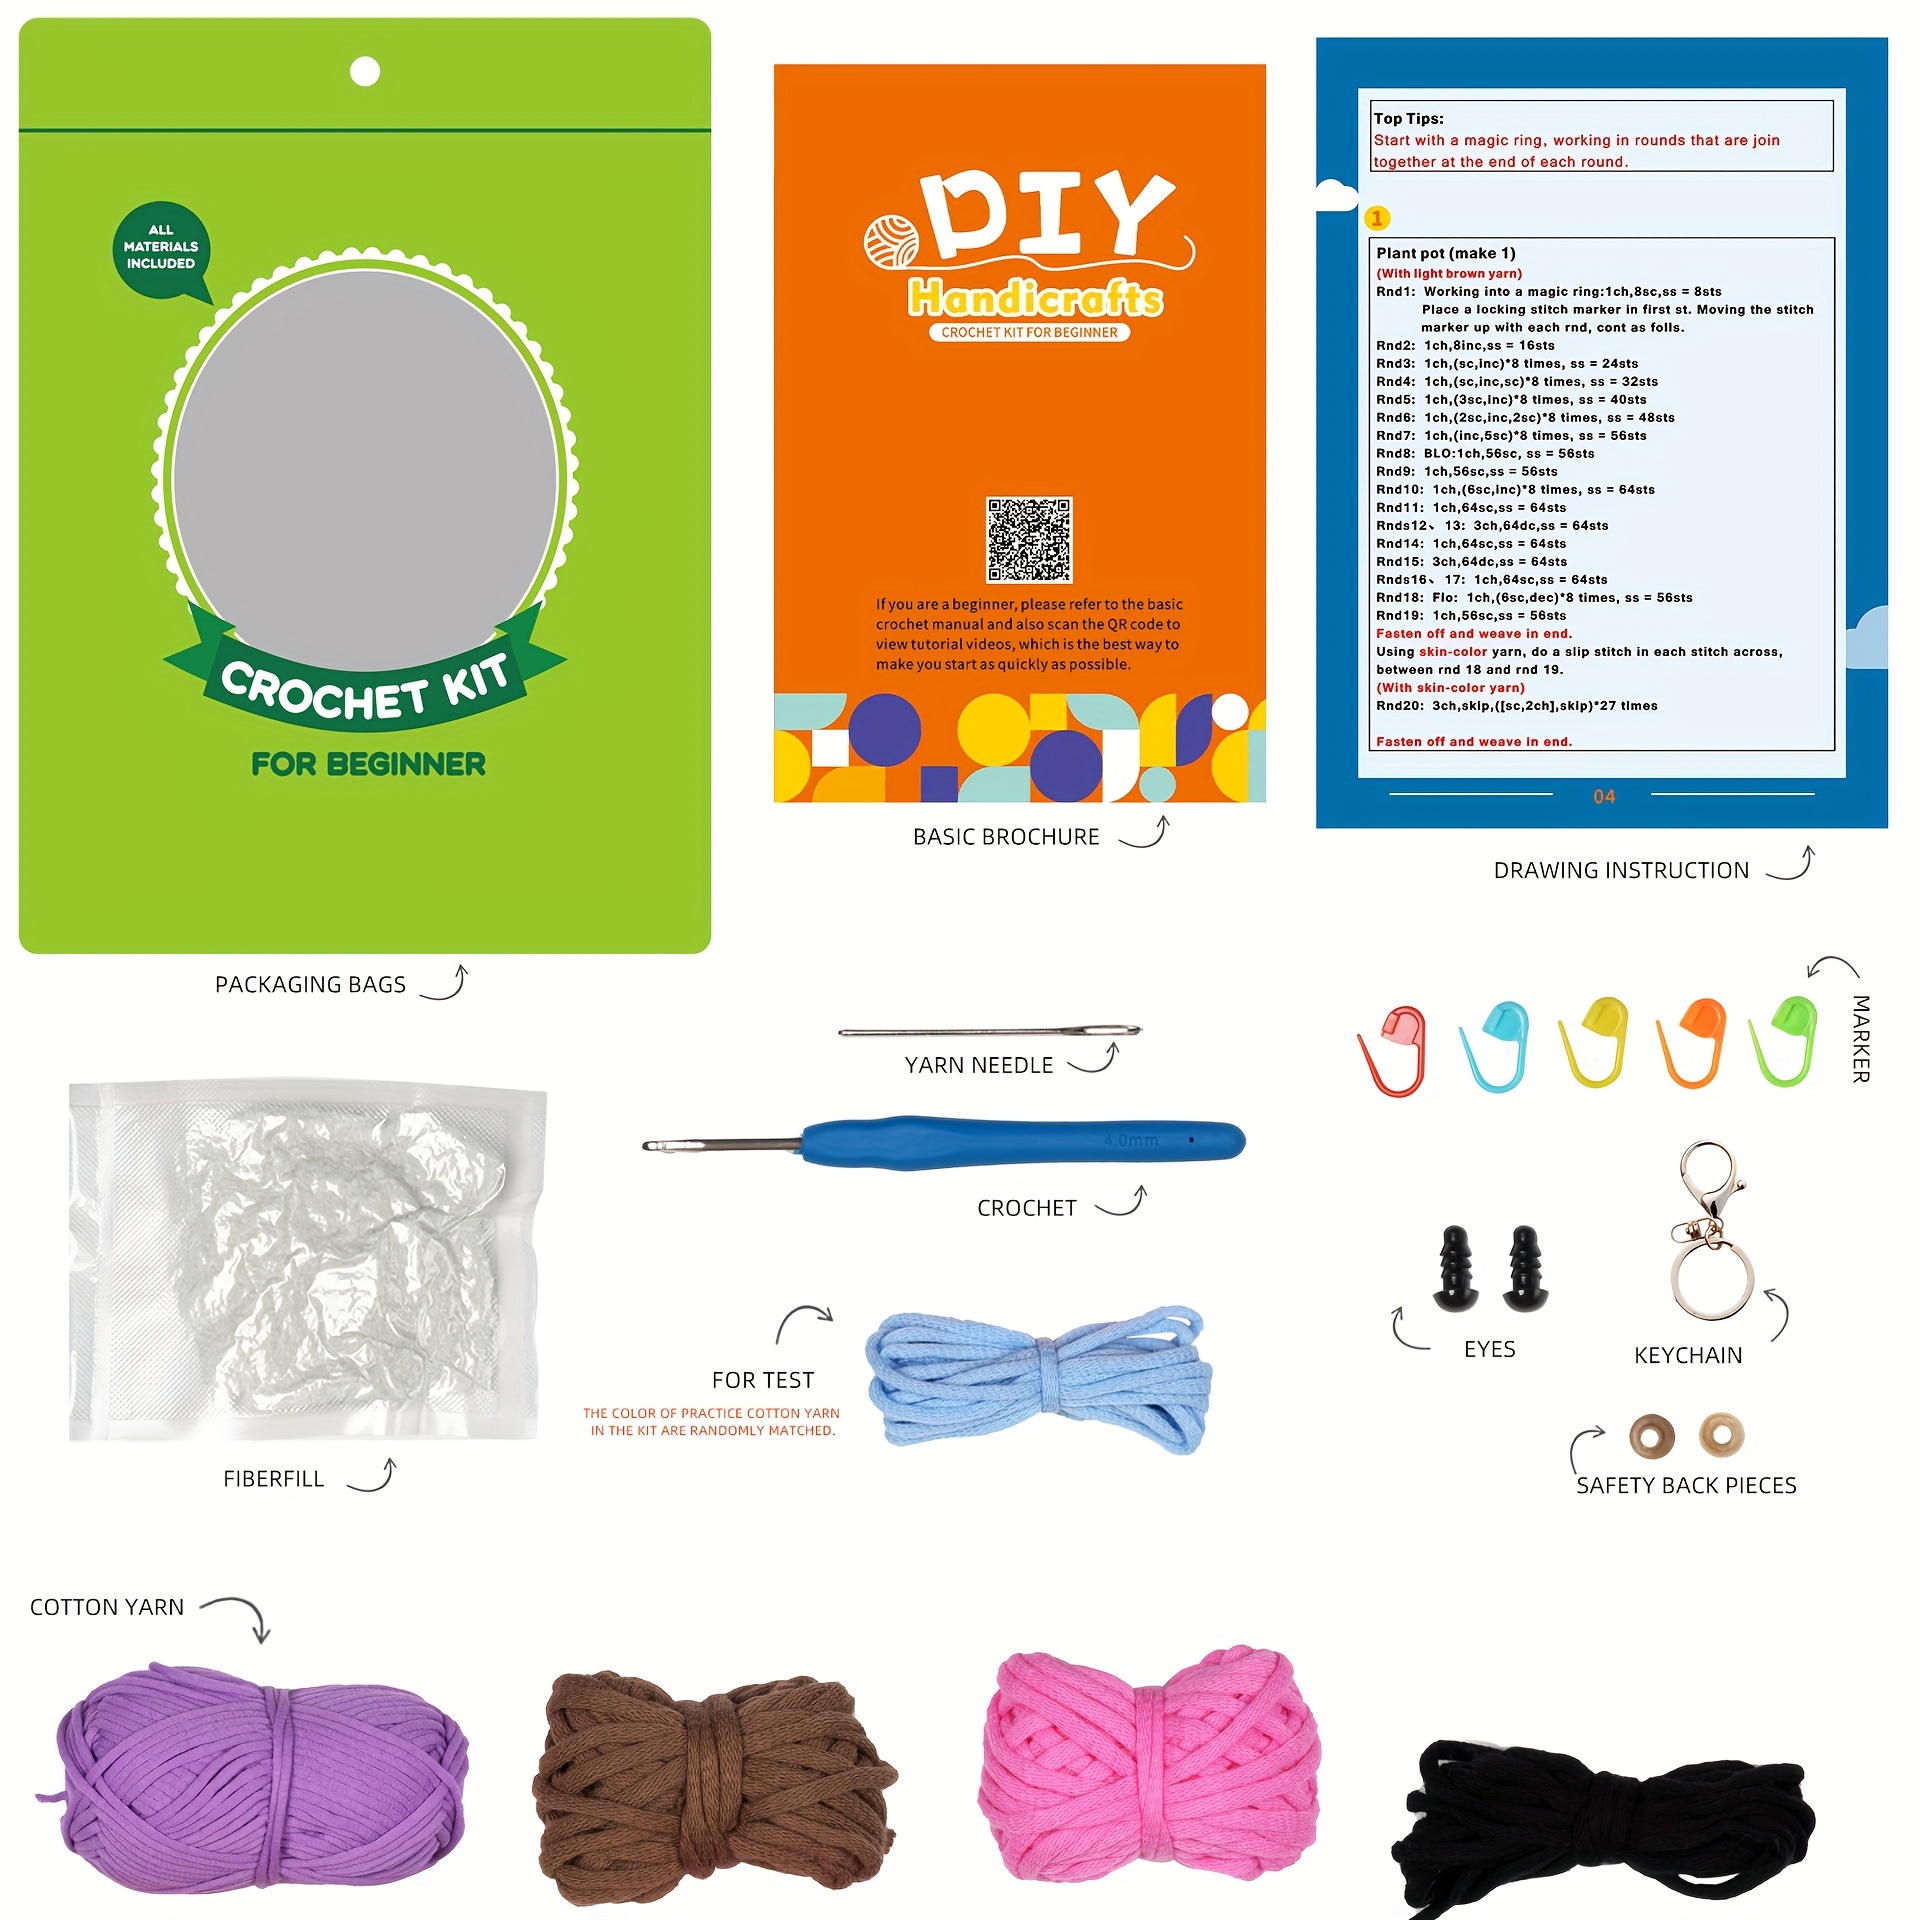 Dragon Crochet Kit for Beginners